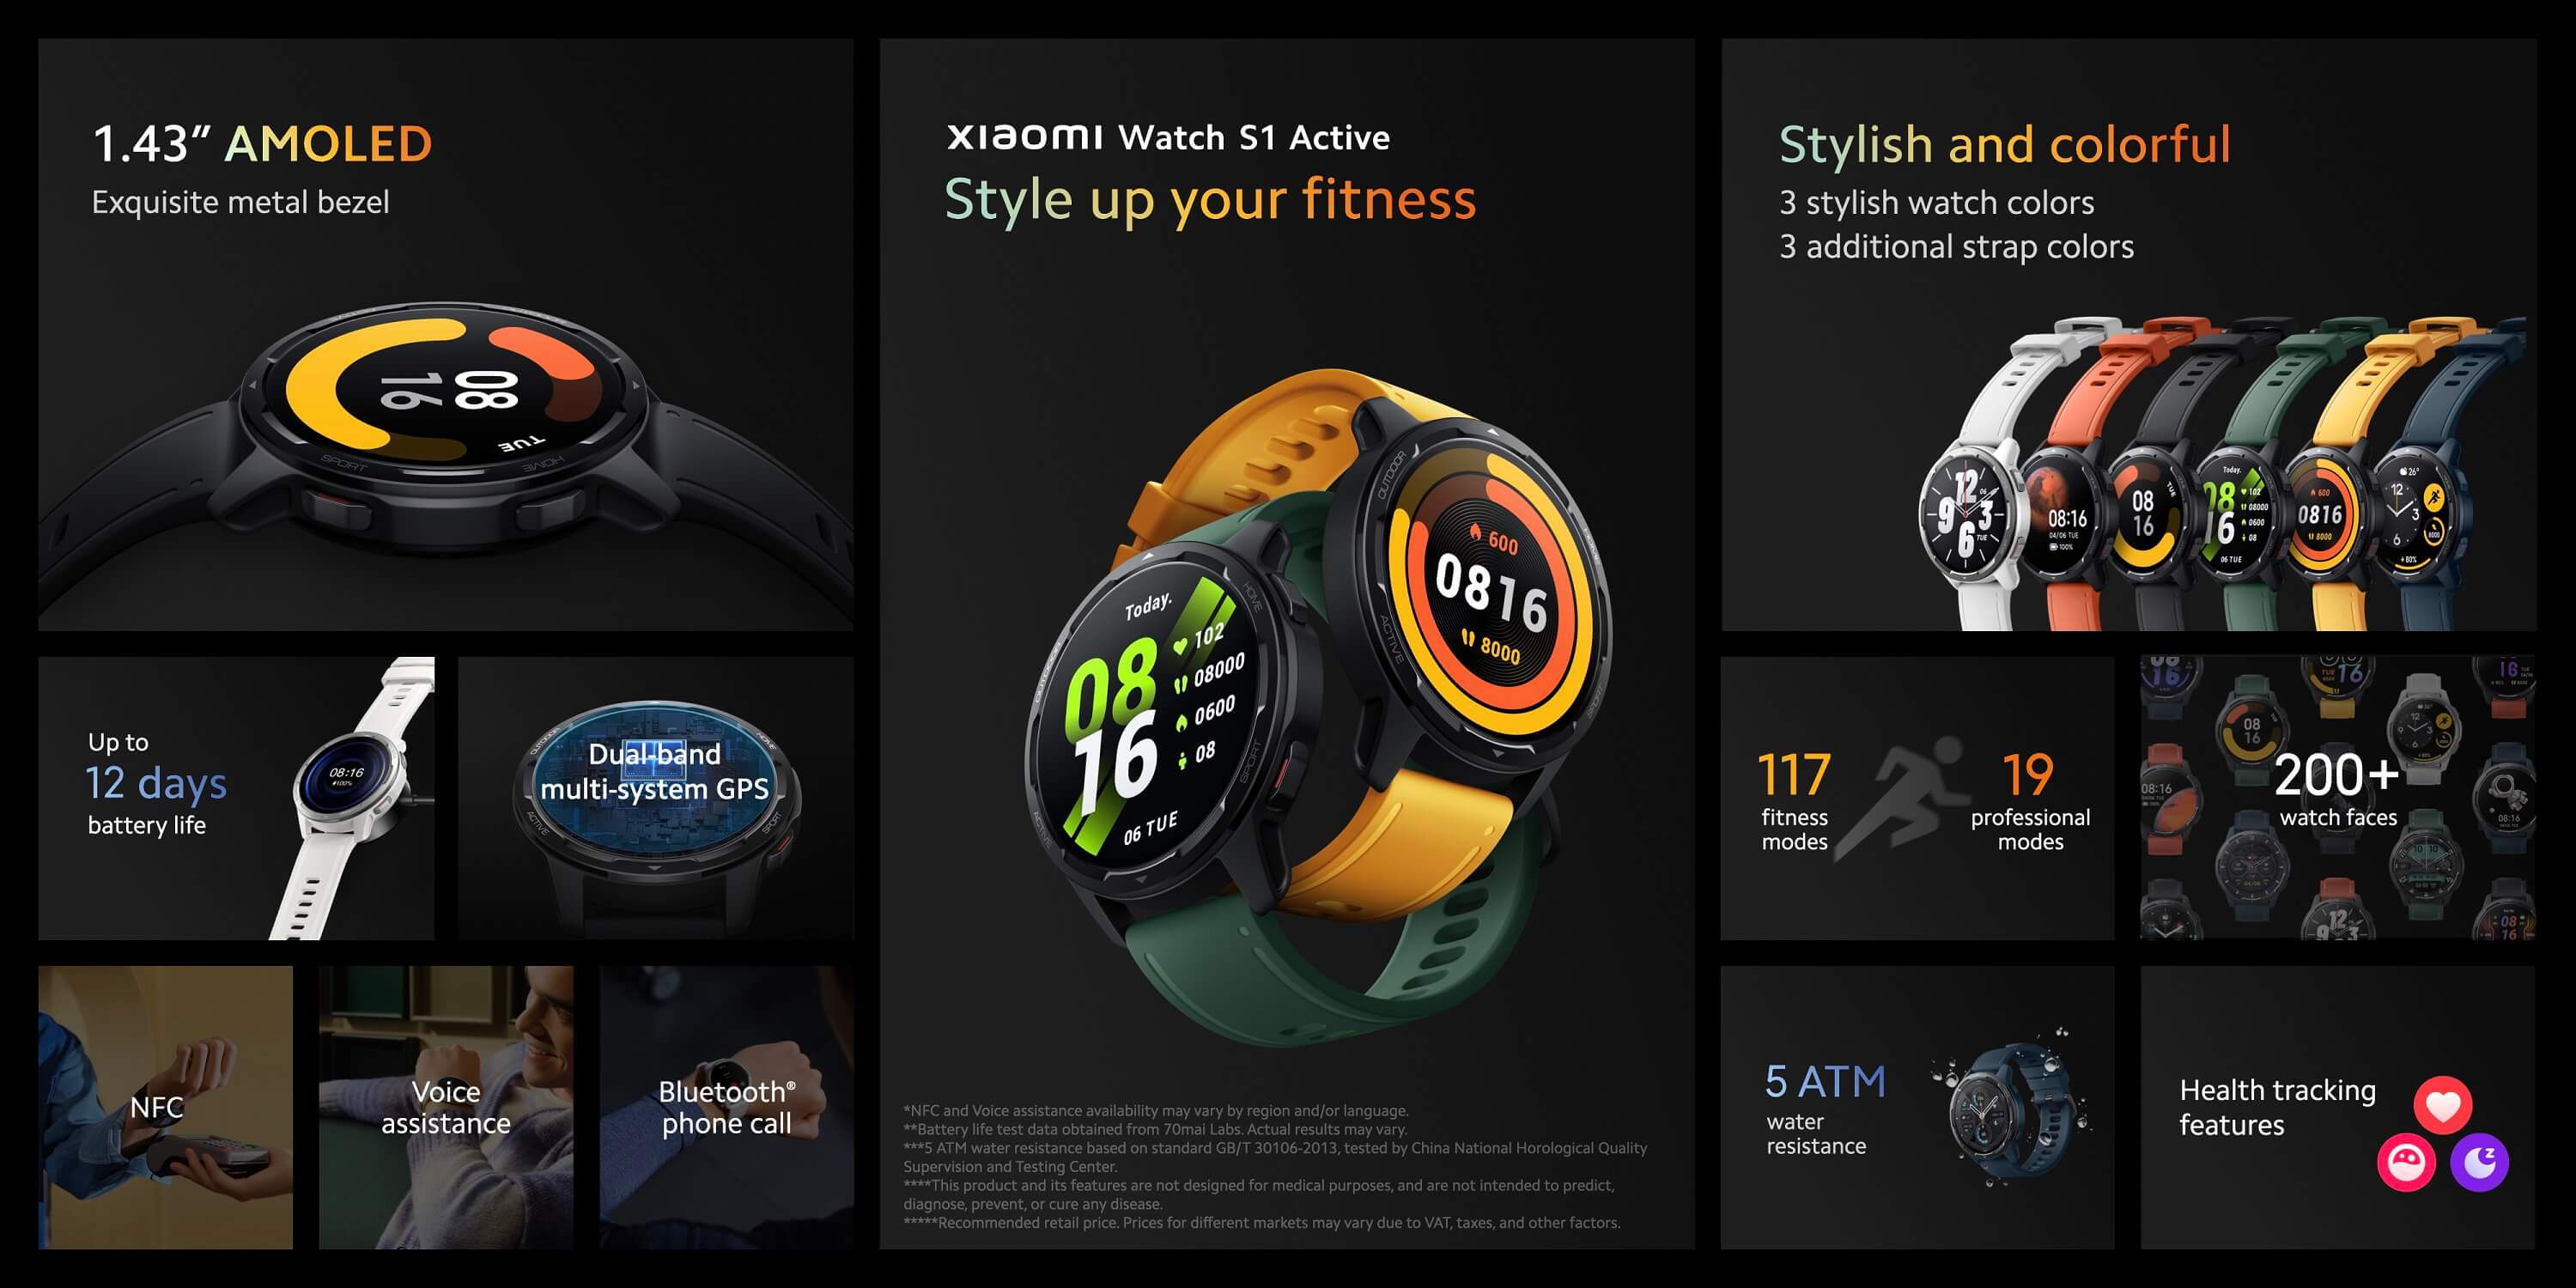 Xiaomi Watch S1 active features